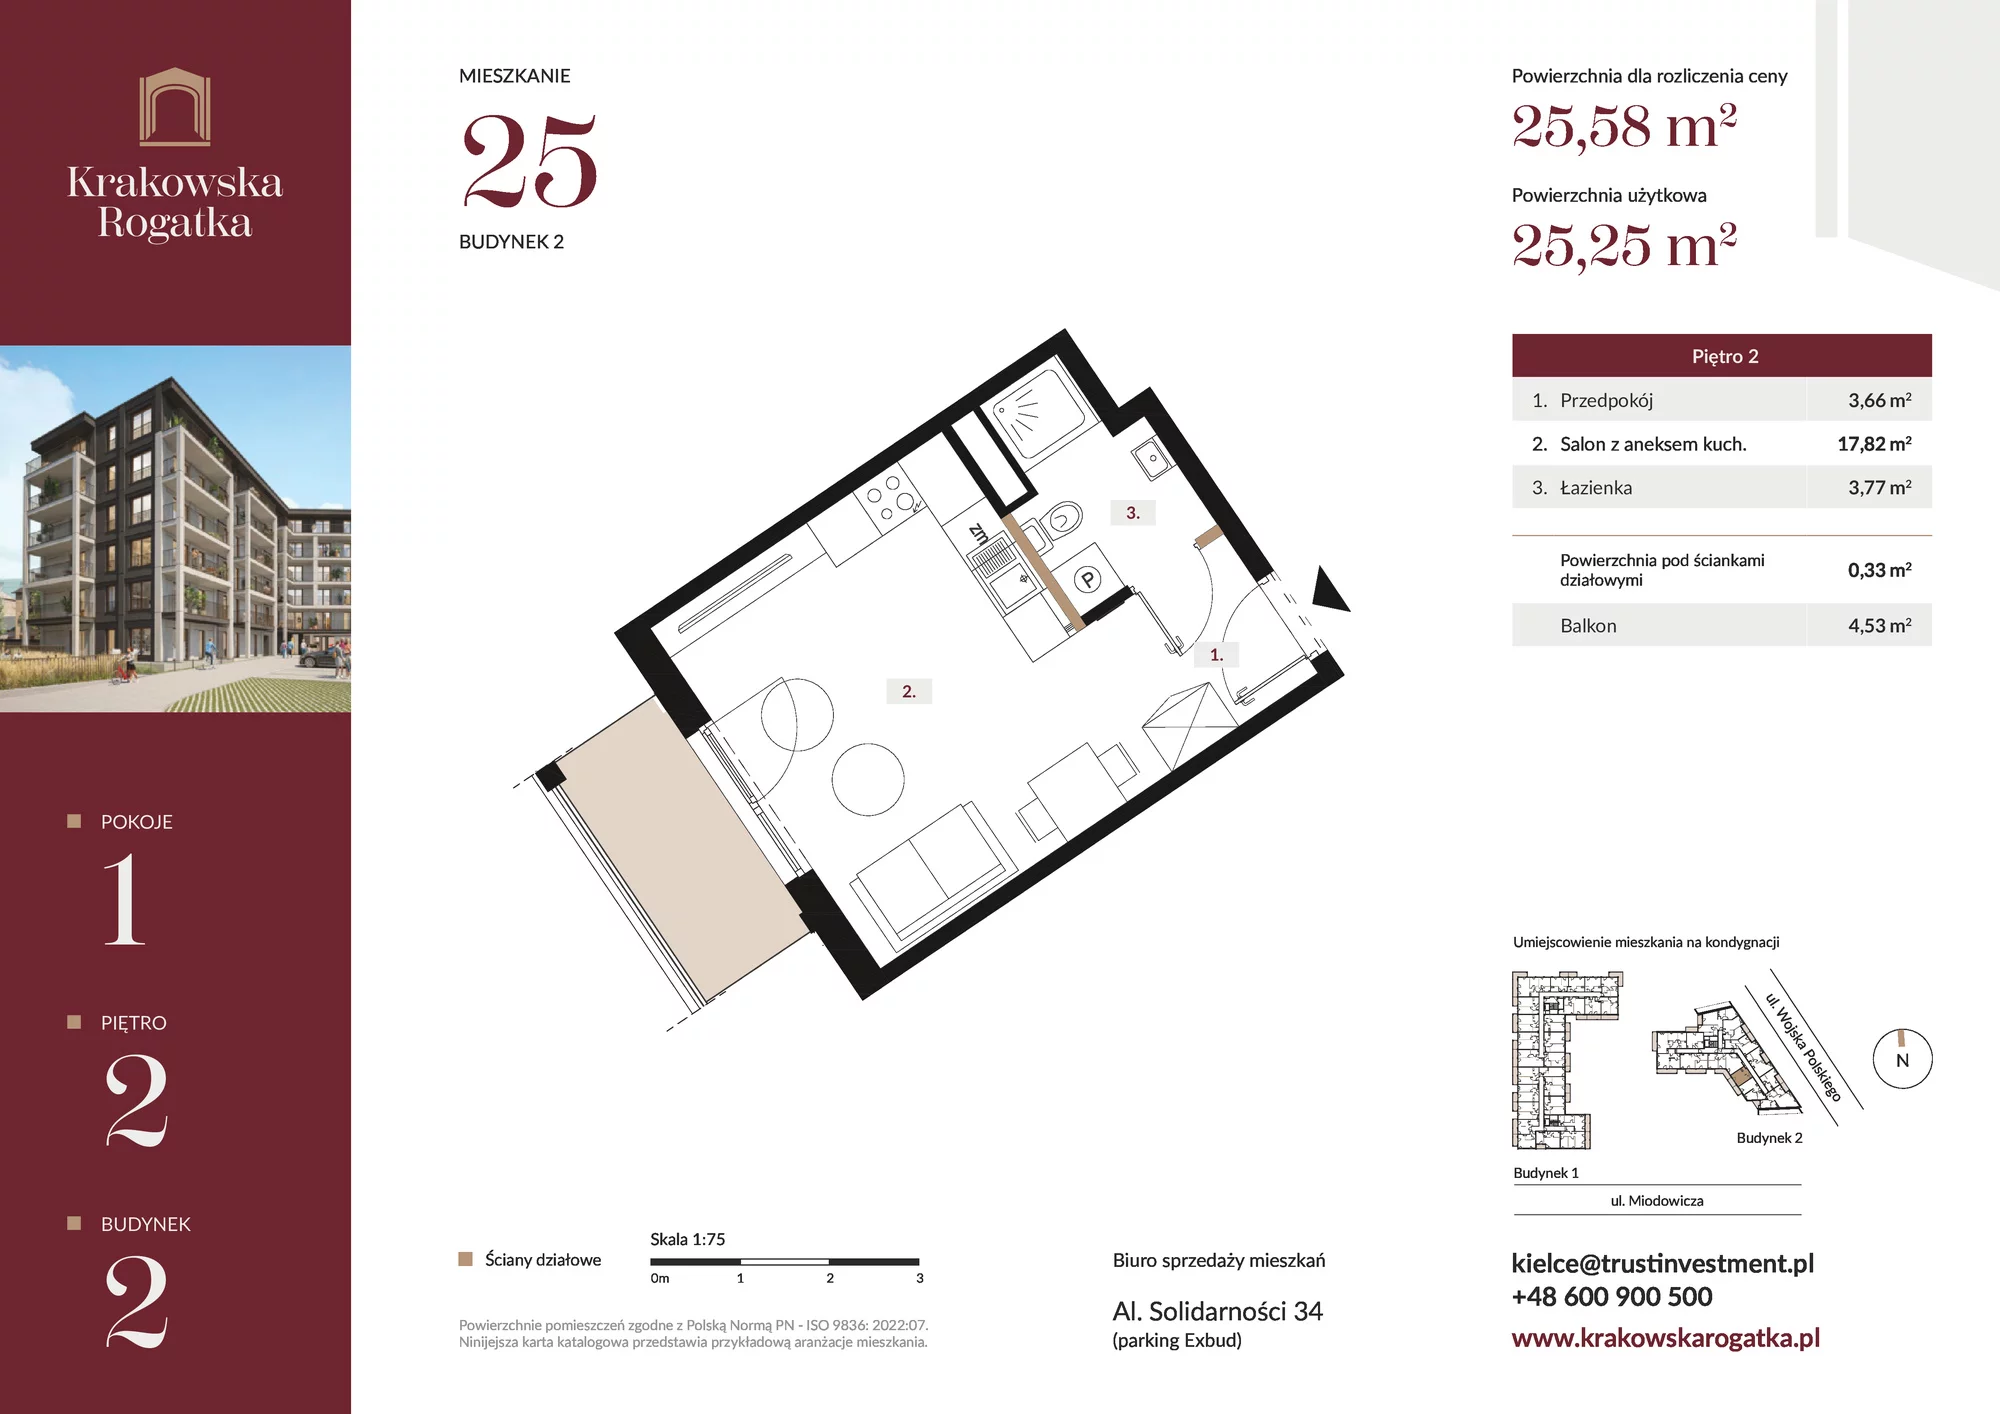 Mieszkanie 25,58 m², piętro 2, oferta nr Budynek 2 Mieszkanie 25, Krakowska Rogatka, Kielce, ul. Miodowicza 1